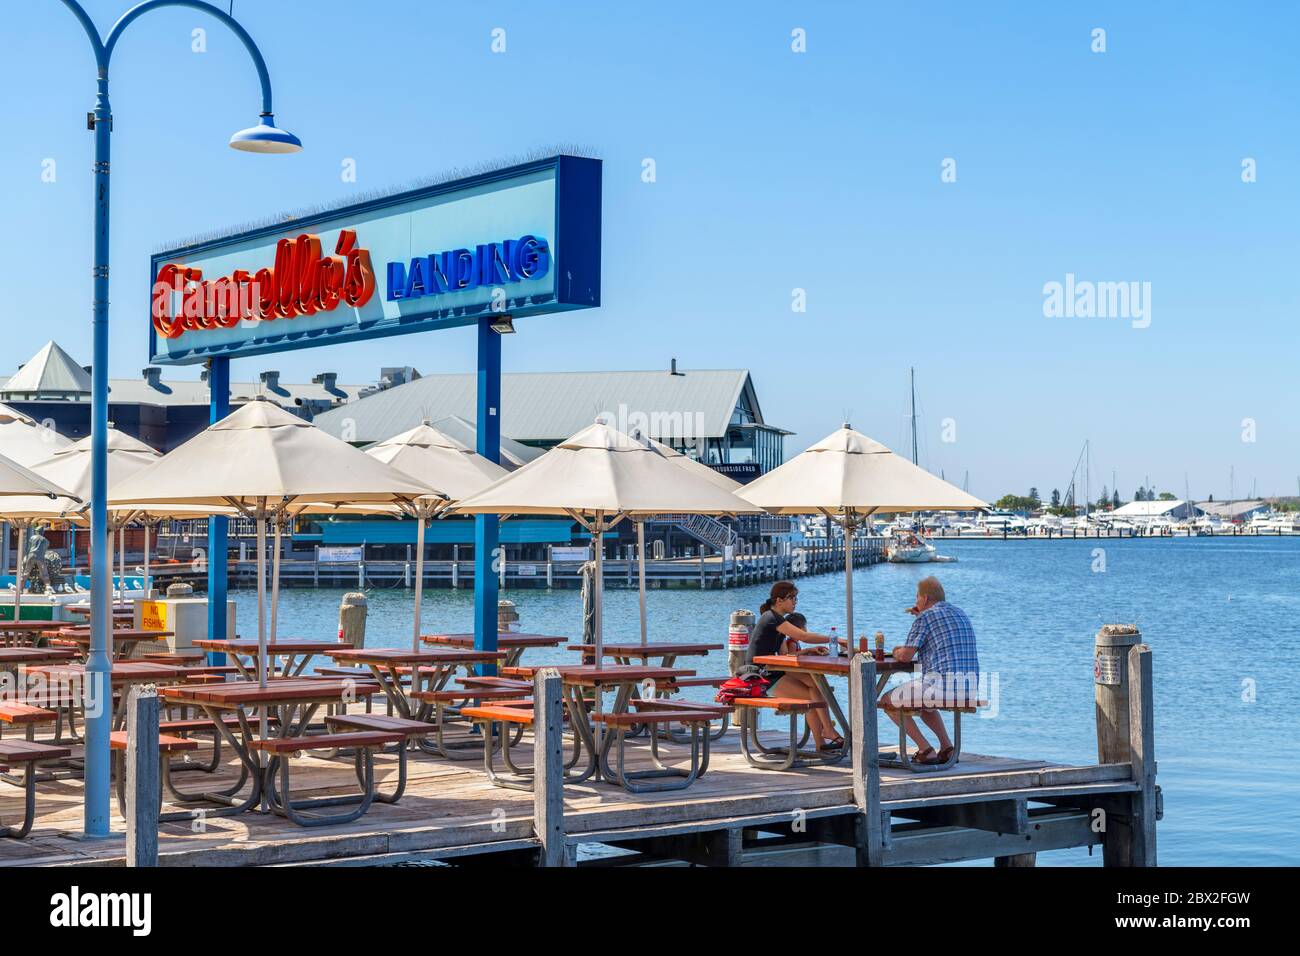 Couple assis dans un café/restaurant en bord de mer (Cicerello's), jetée de Fremantle, port de pêche, Fremantle, Australie occidentale, Australie Banque D'Images